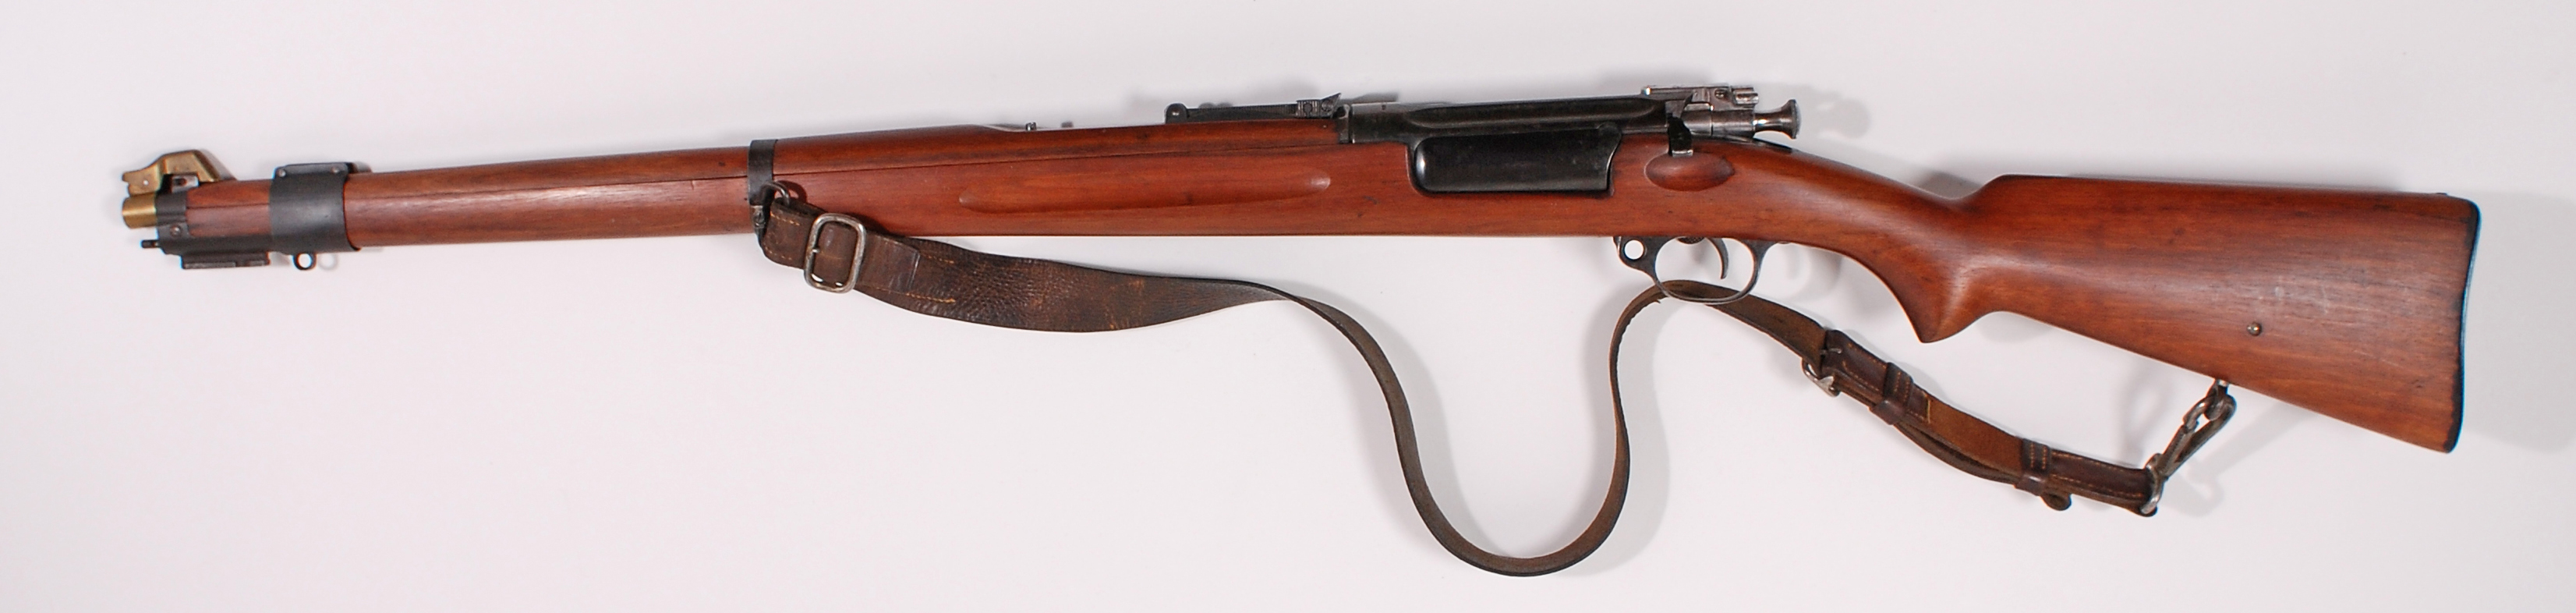 Rifle-Kongsberg-Krag-M1912-16-5447-1.jpg